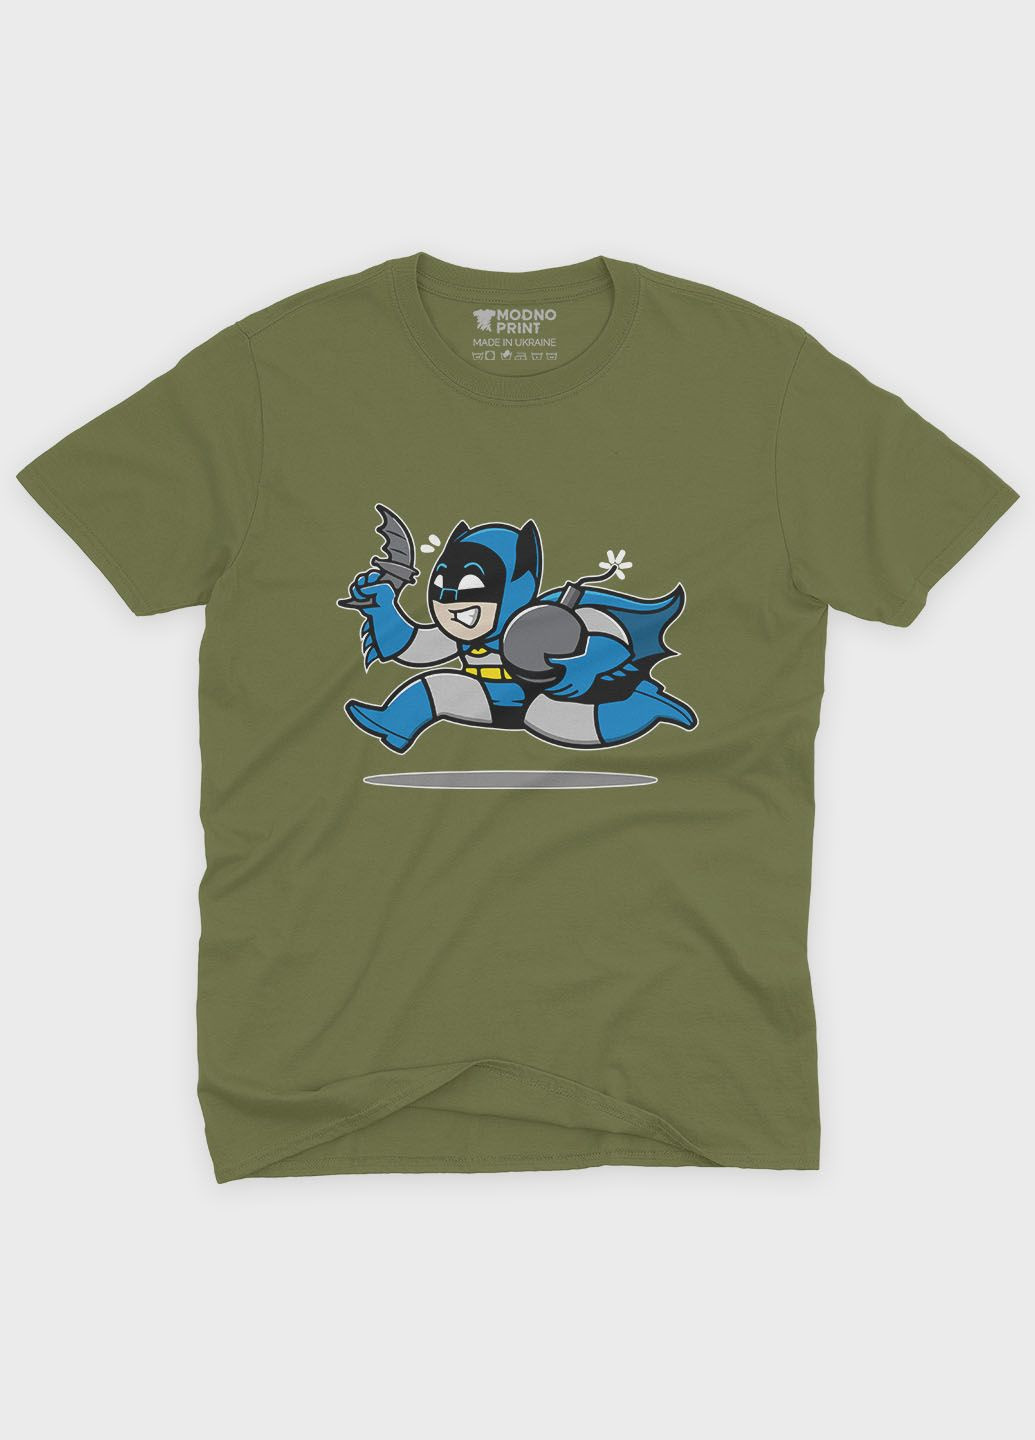 Хаки (оливковая) летняя мужская футболка с принтом супергероя - бэтмен (ts001-1-hgr-006-003-033-f) Modno